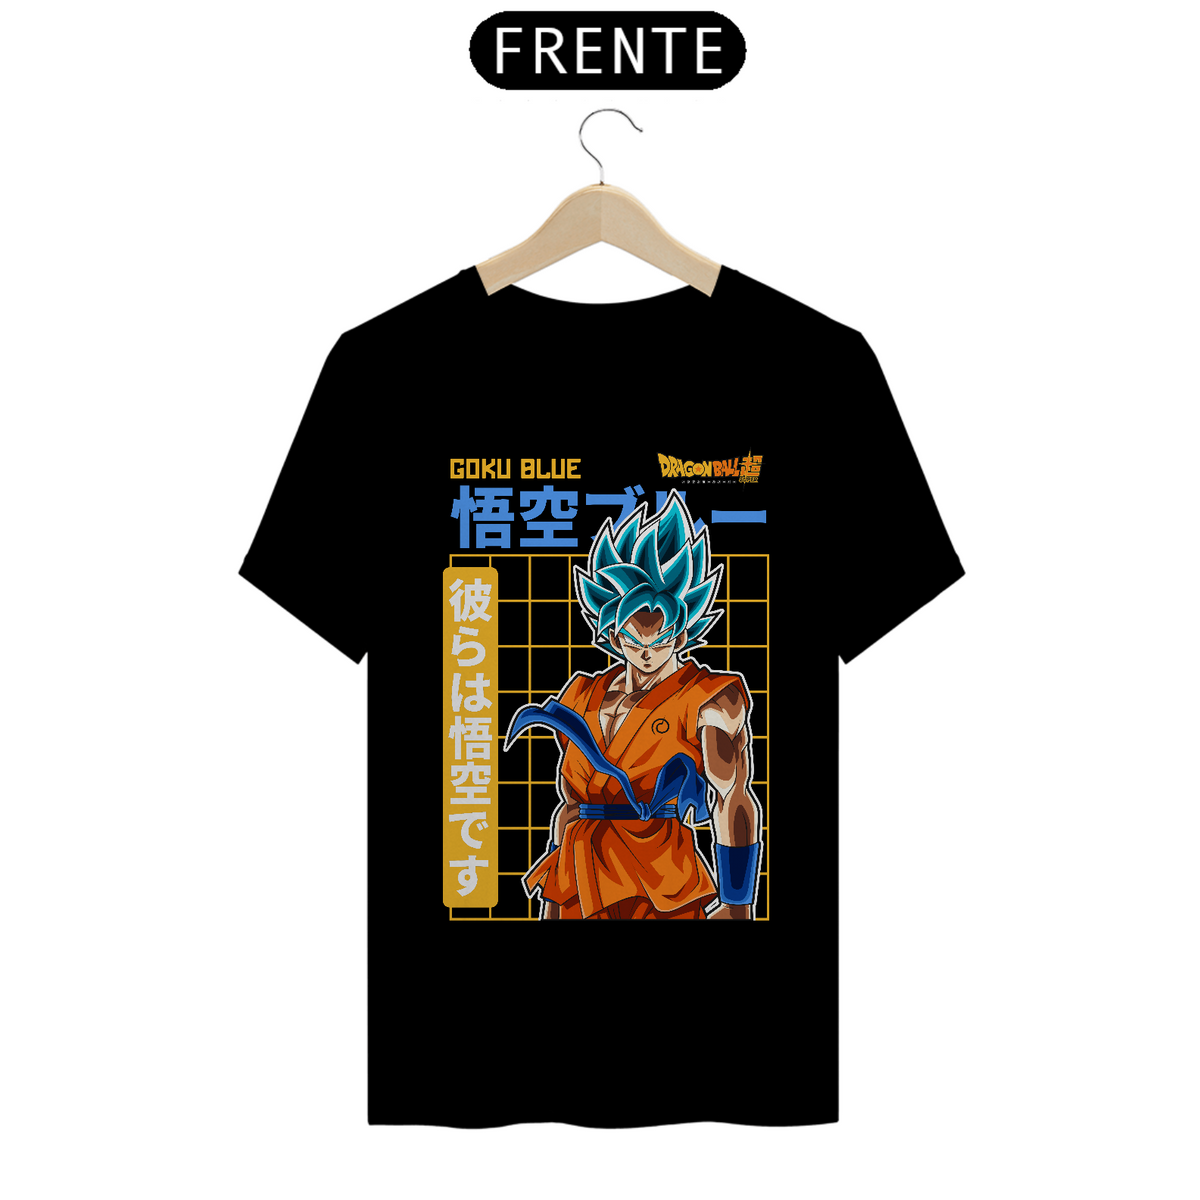 Nome do produto: Camiseta Quality - Anime, Goku blue